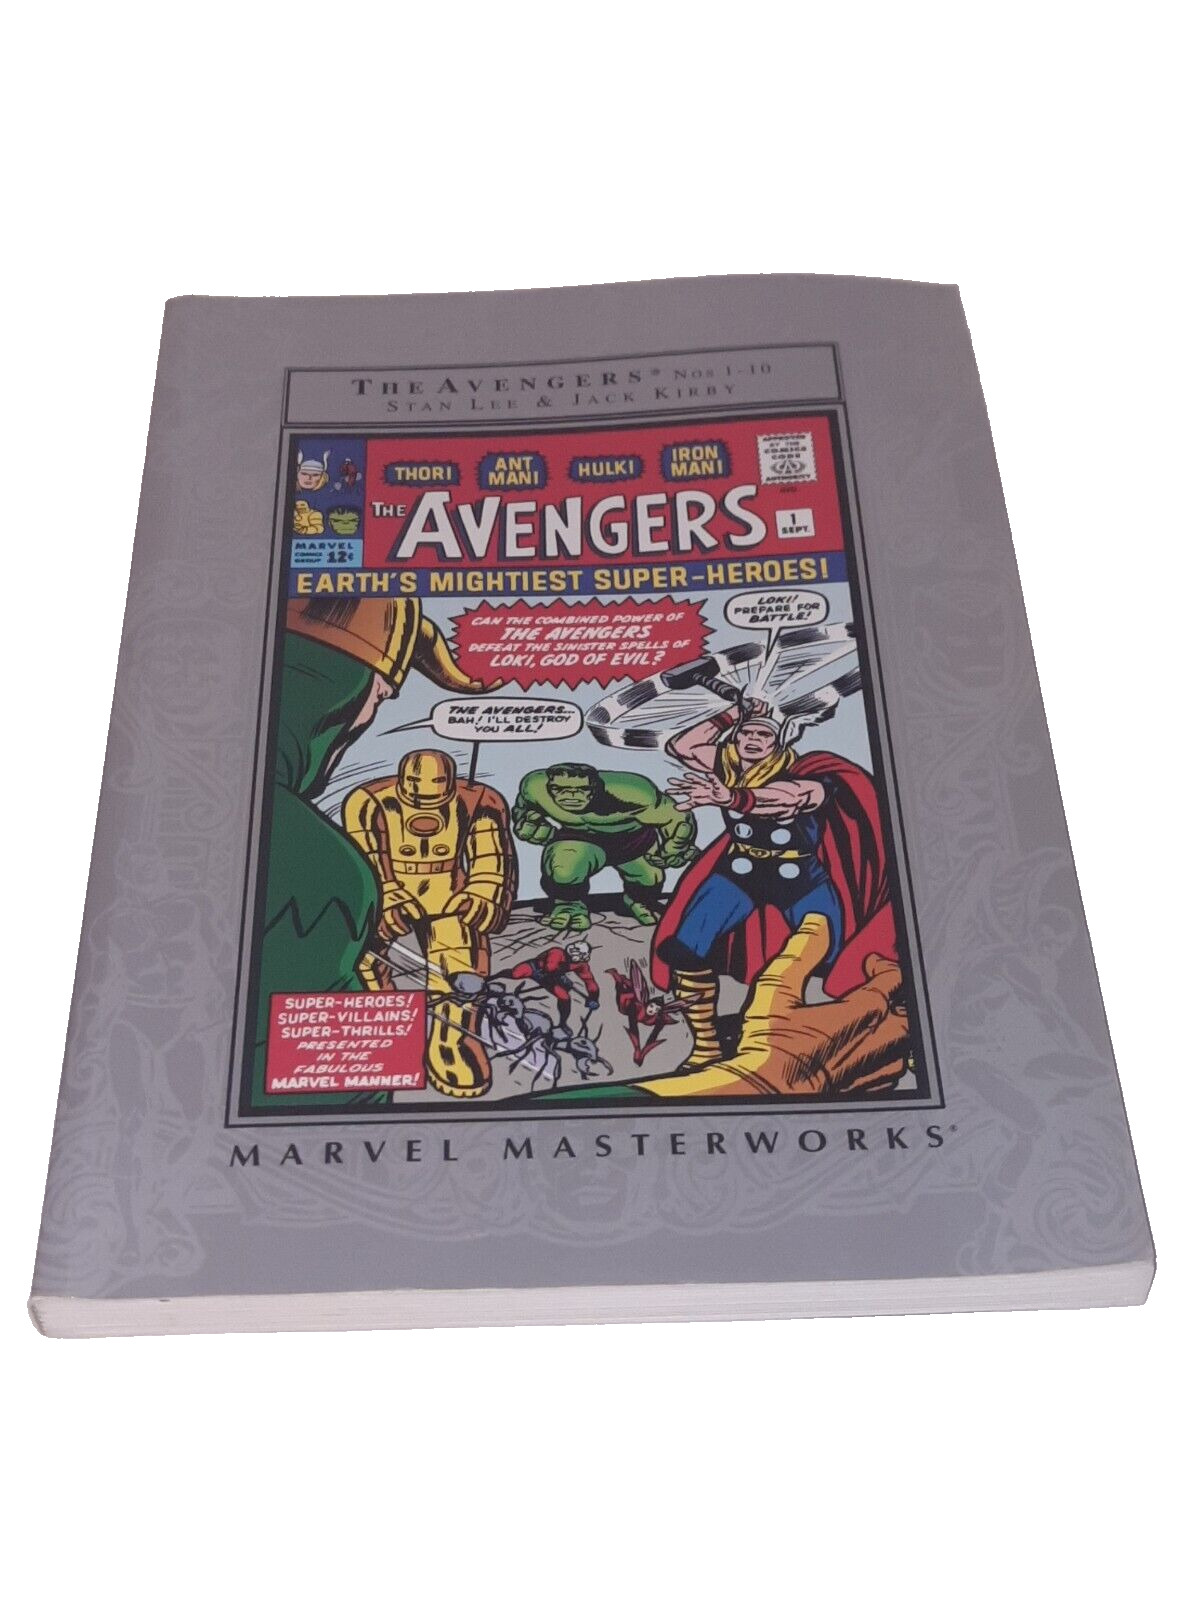 Marvel Masterworks: The Avengers - Barnes & Noble Edition #1 Marvel 2003 TPB